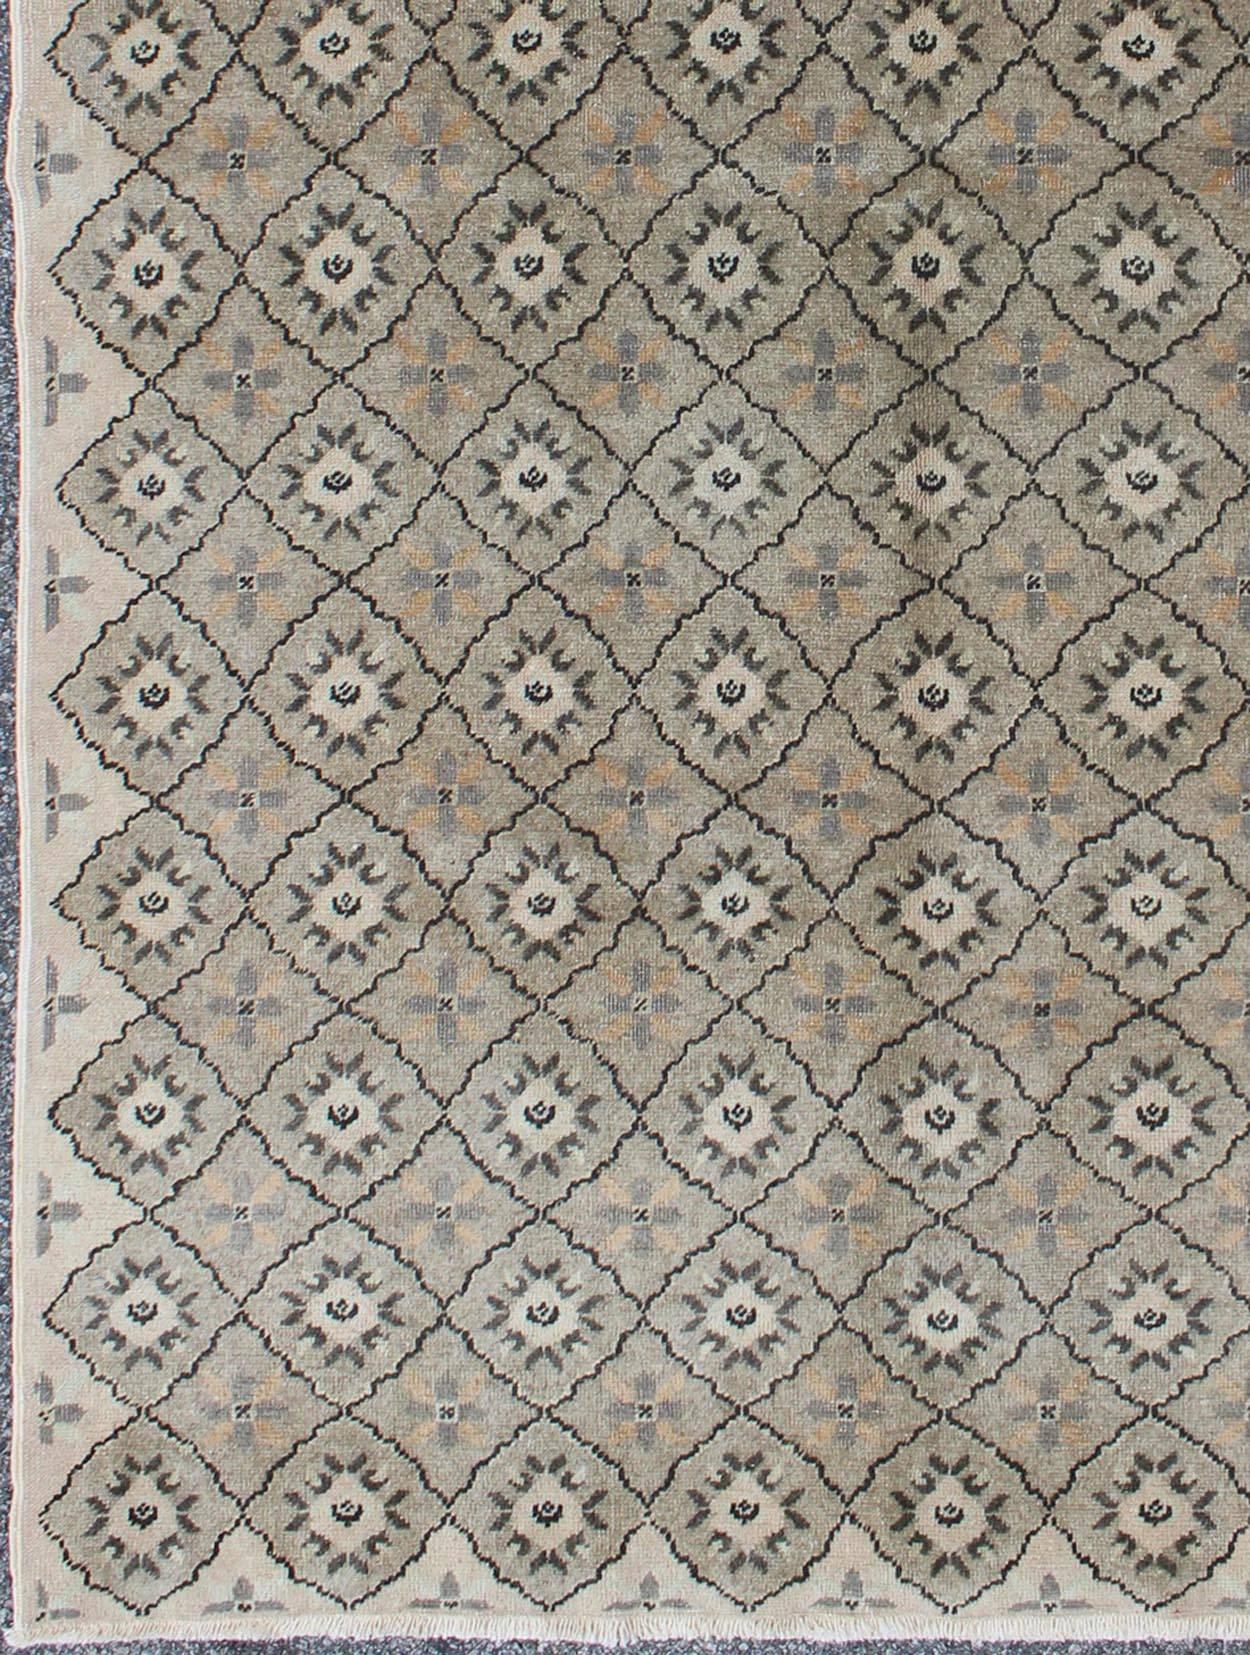 Vieux tapis turc de Sivas avec des motifs de diamants stylisés sur toute la surface en gris, Keivan Woven Arts / tapis ALG-136570, pays d'origine / type : Turquie / Sivas, vers la moitié du 20e siècle

Des motifs stylisés se répètent sur ce tapis